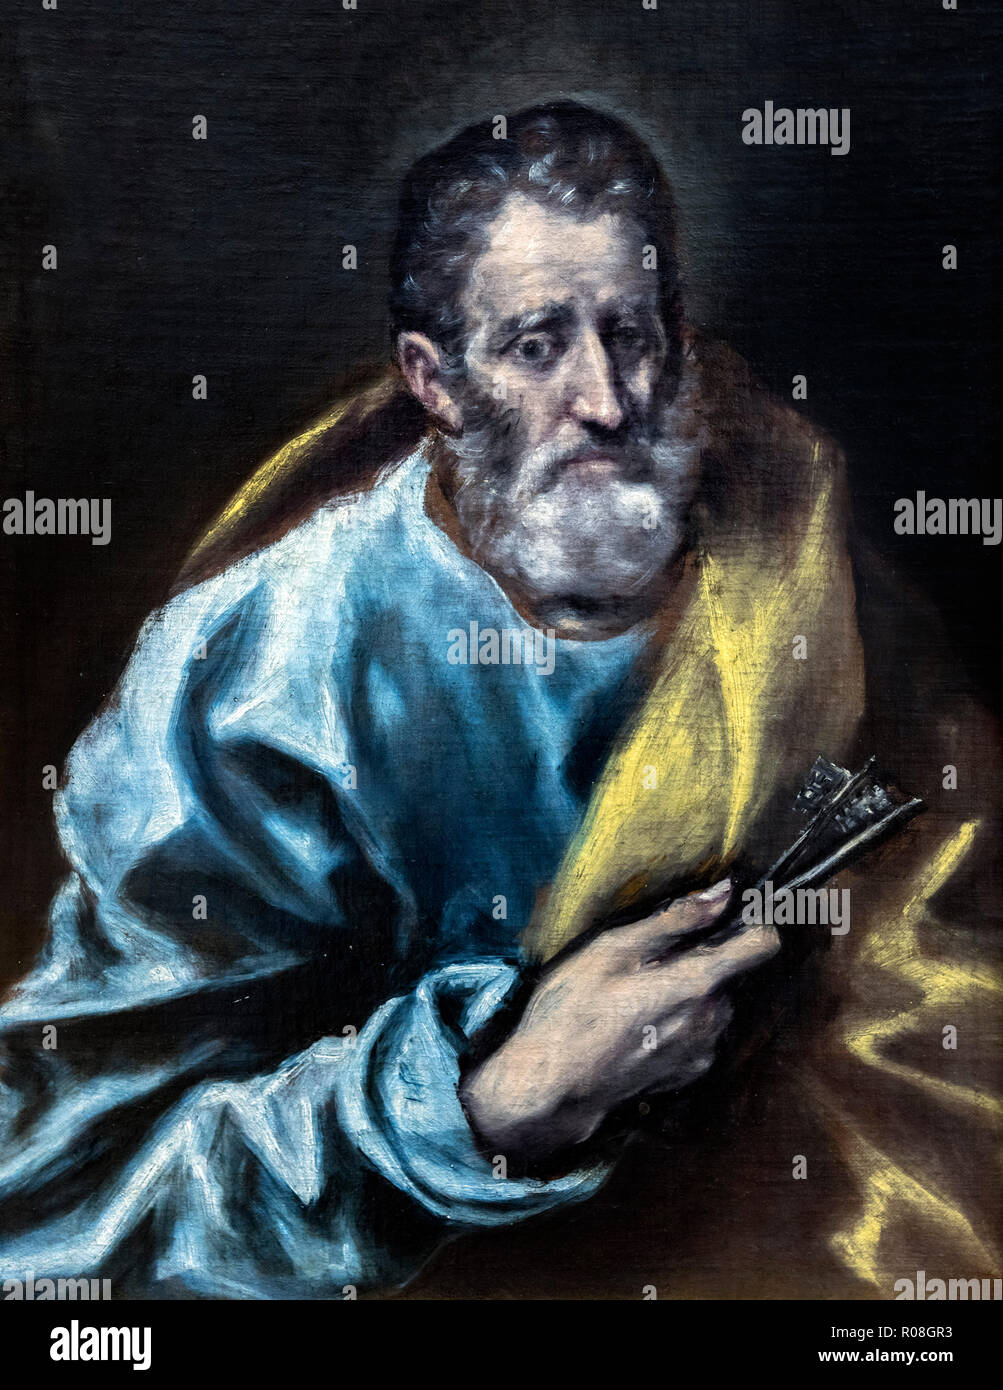 L'Apôtre saint Pierre par l'atelier d'El Greco, Domenikos Theotokopoulos (1541-1614), huile sur toile, c.1608-14 Banque D'Images